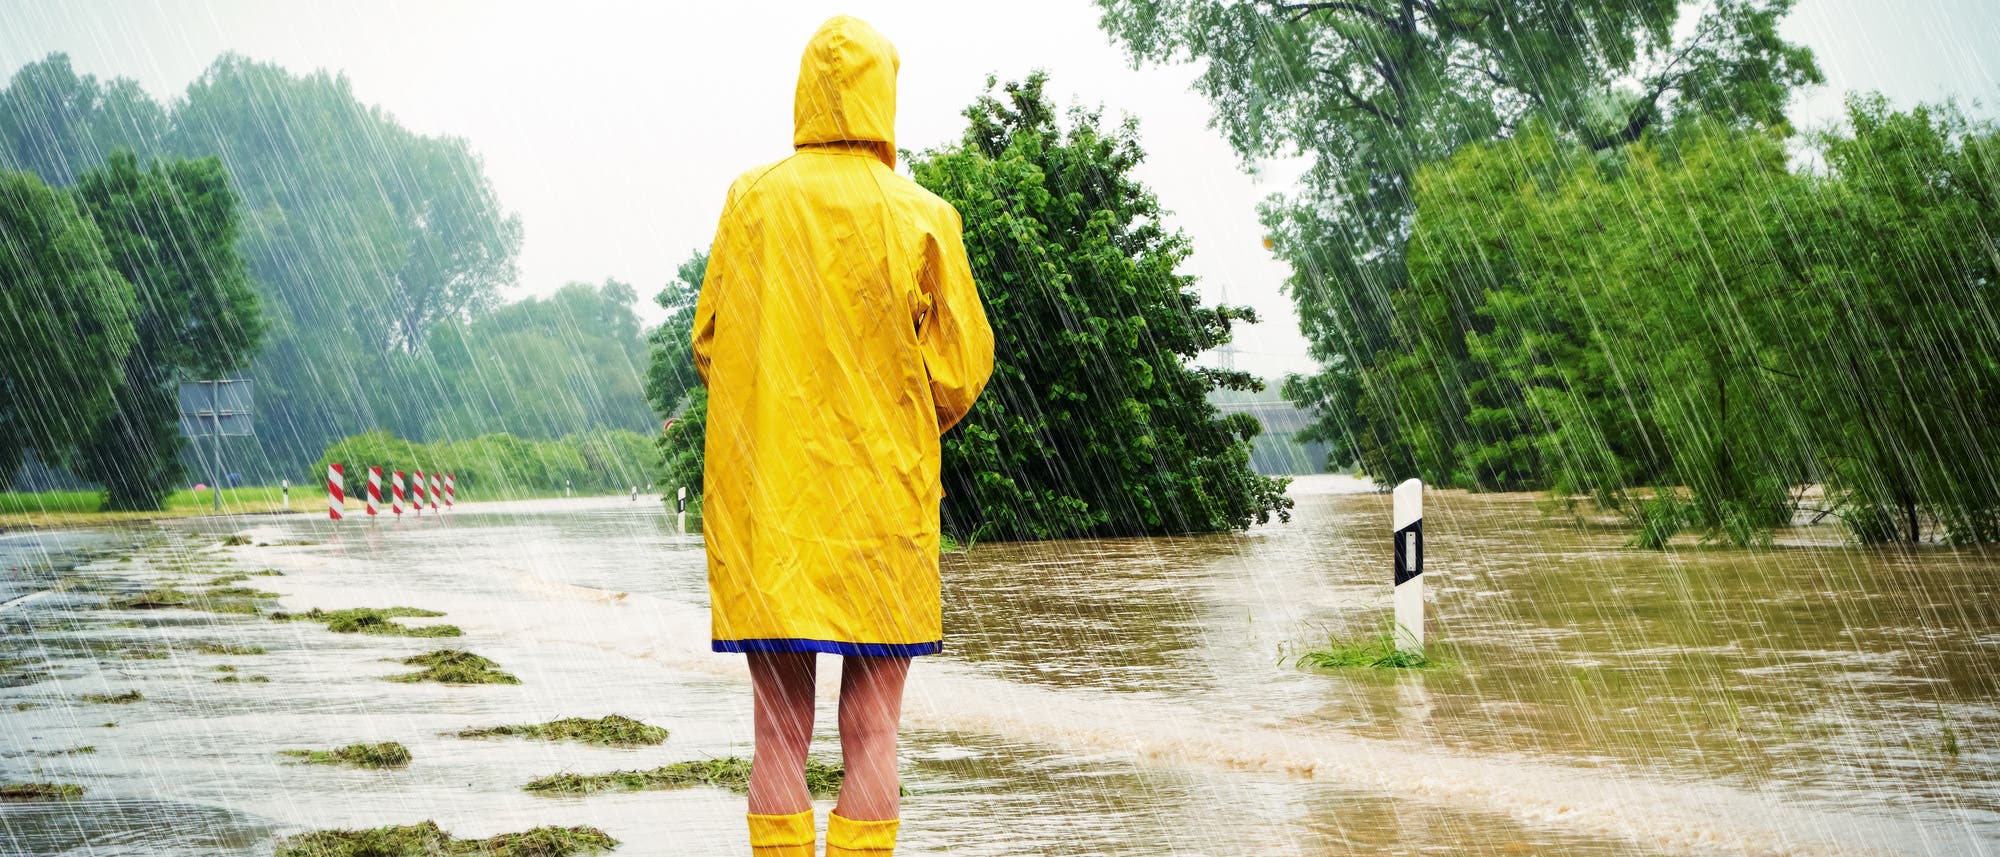 Mädchen im Regenmantel auf überfluteter Straße